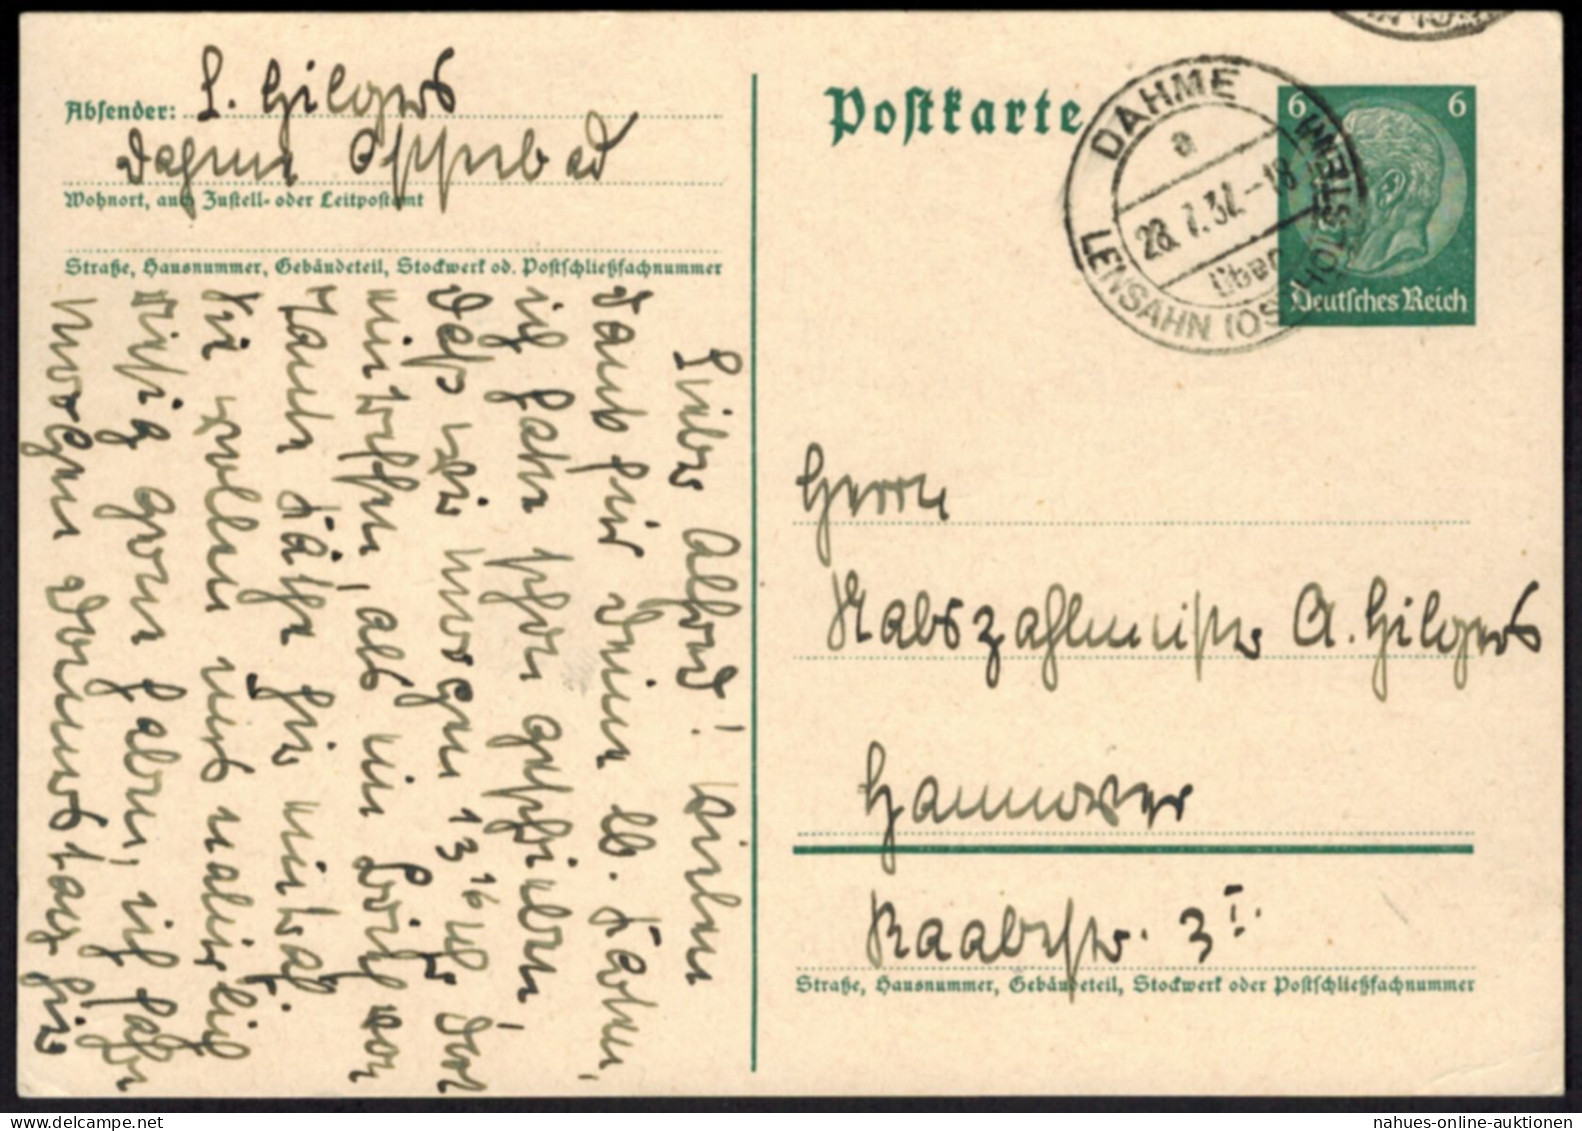 Hindenburg Ganzsache Landpoststempel Dahme über Lensahn Schleswig-Holstein 1932 - Brieven En Documenten